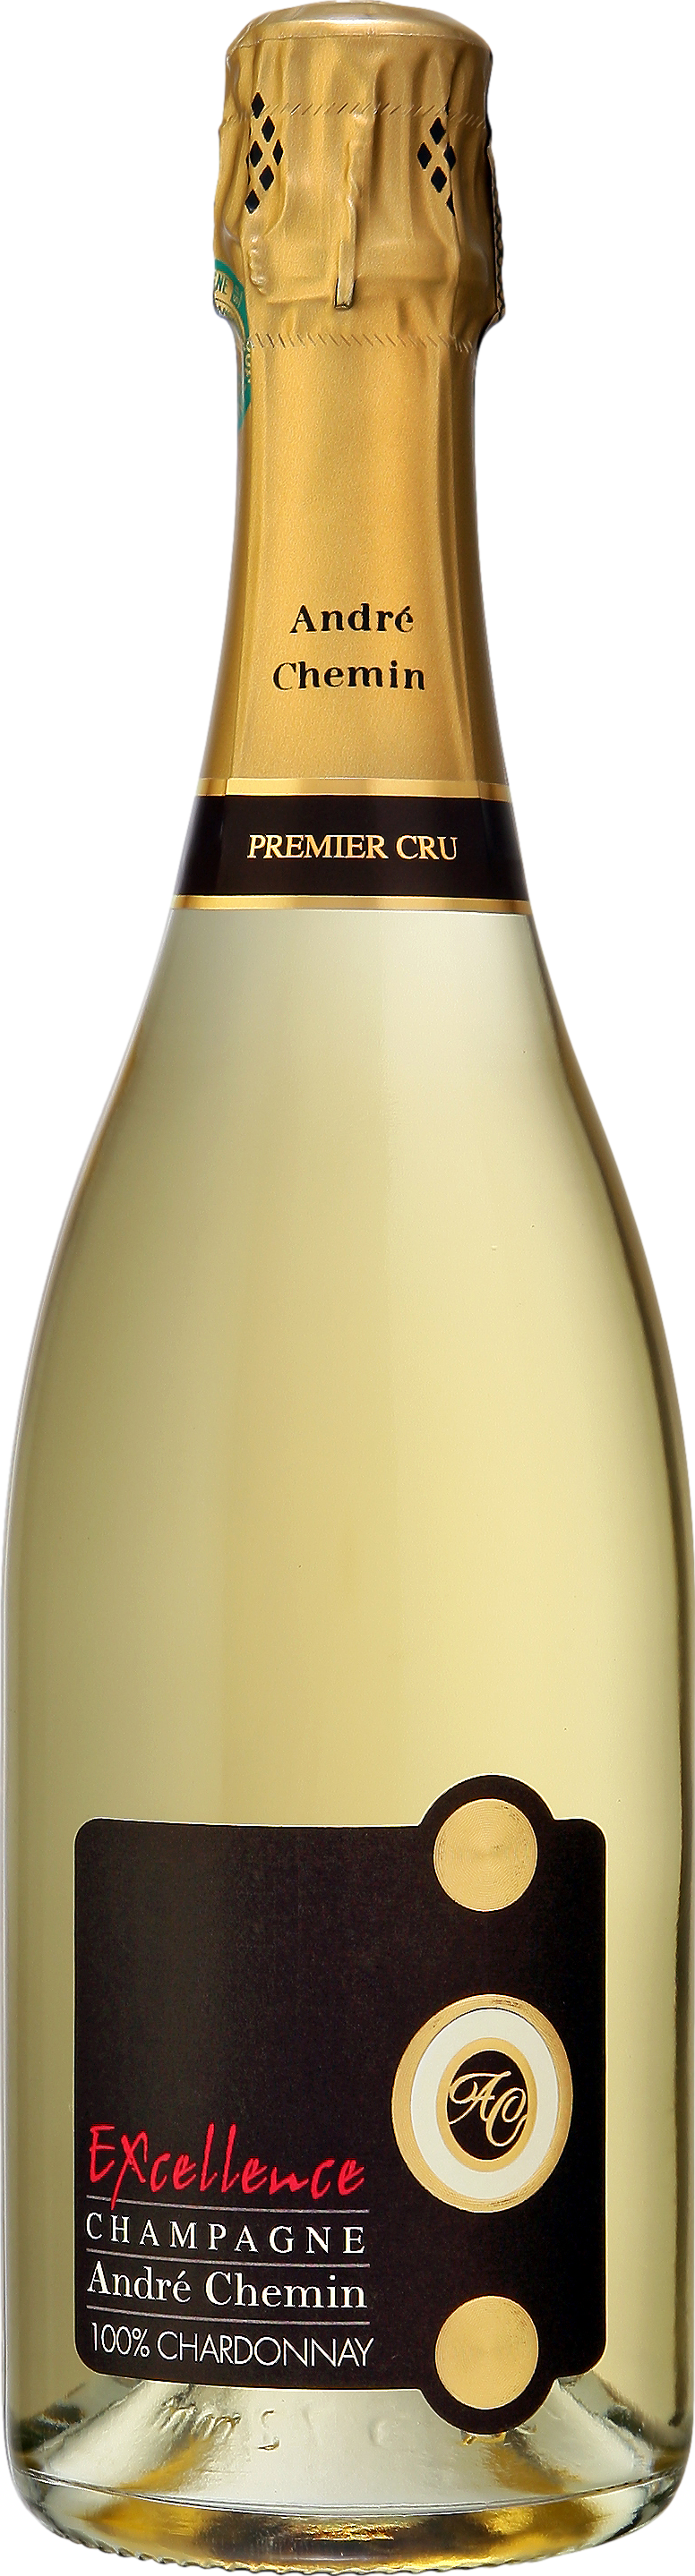 Champagne Andre Chemin Premier Cru Excellence Brut 2010 Šumivé 12.5% 0.75 l